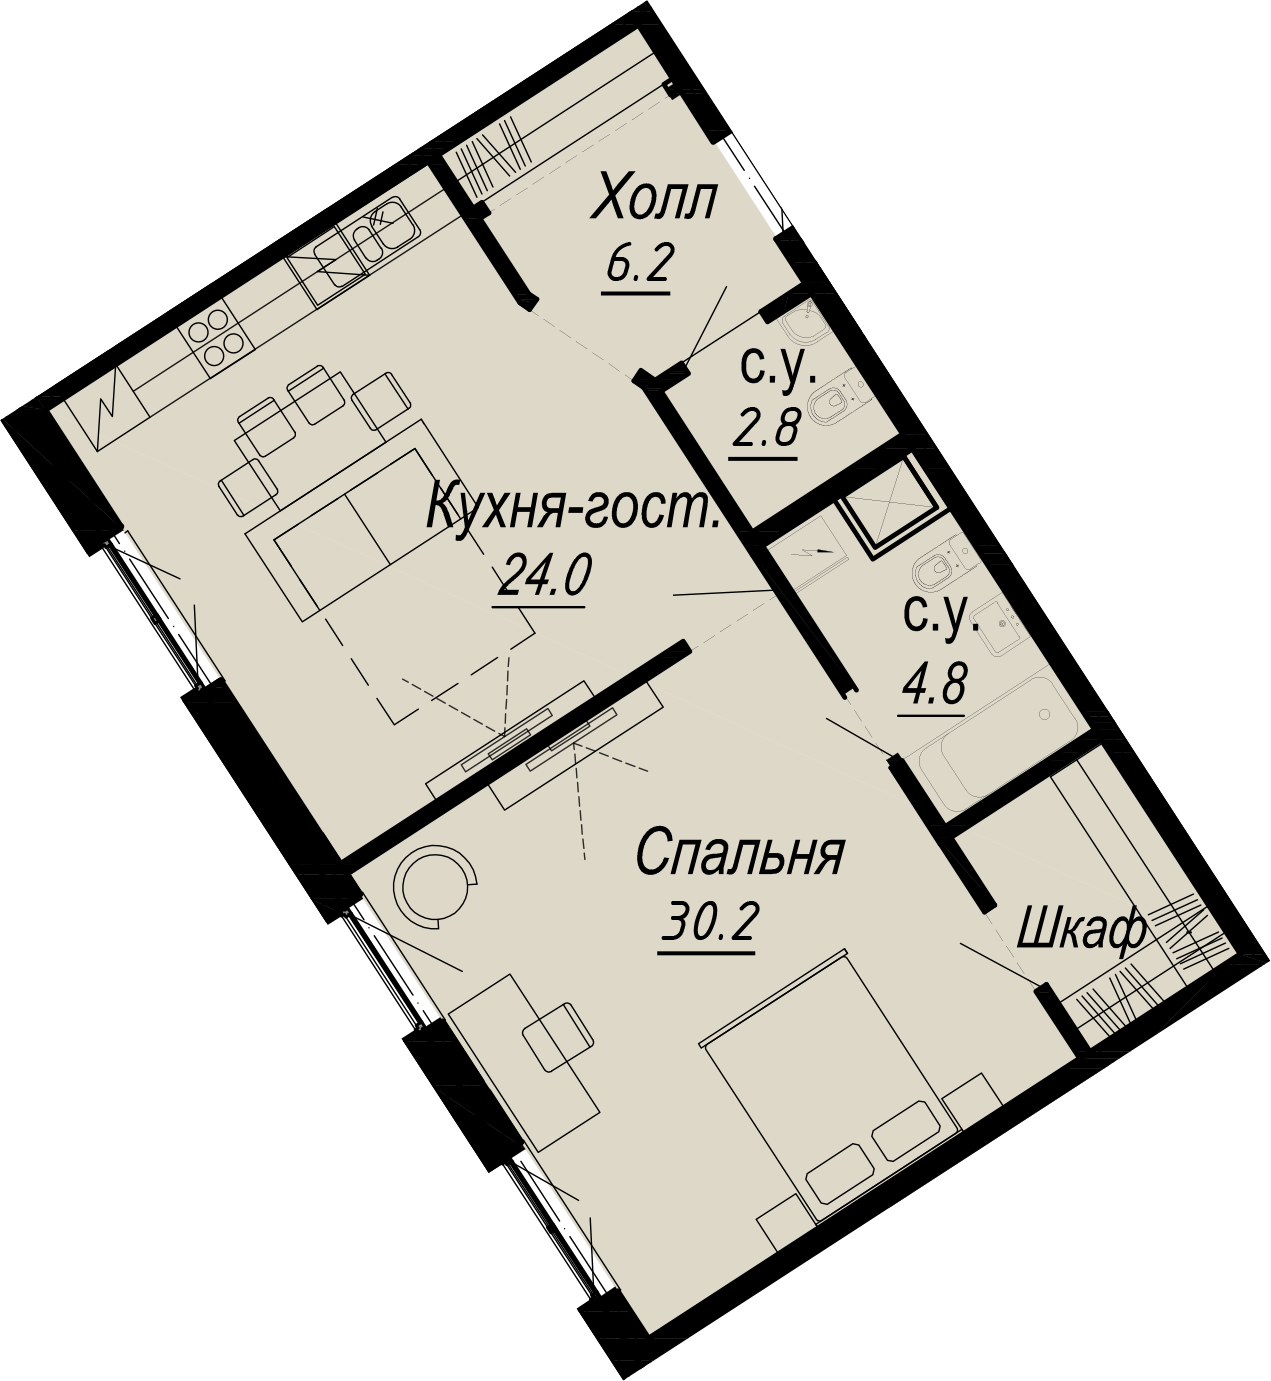 1-комнатная квартира  №3-3 в Meltzer Hall: 68 м², этаж 3 - купить в Санкт-Петербурге